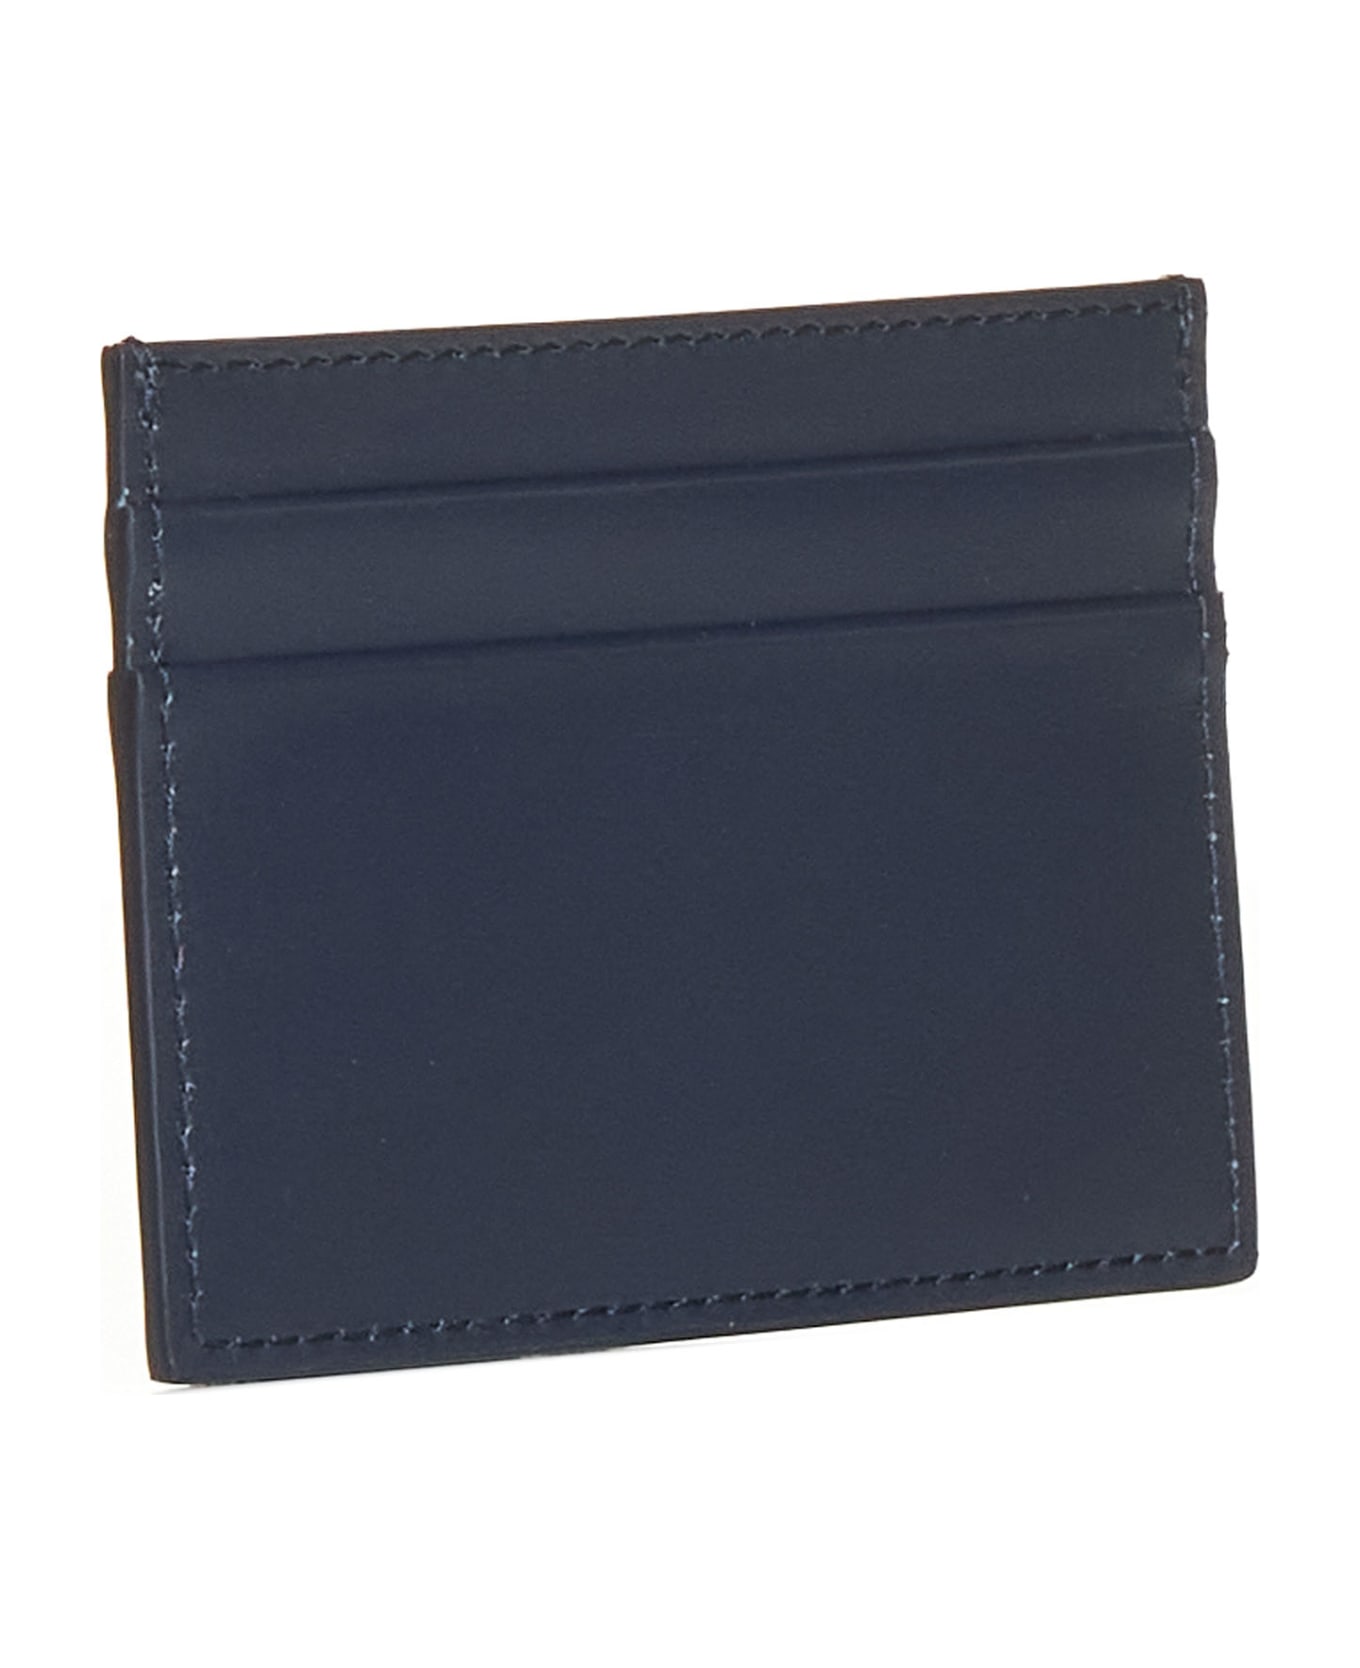 Dolce & Gabbana Card Case - blue 財布